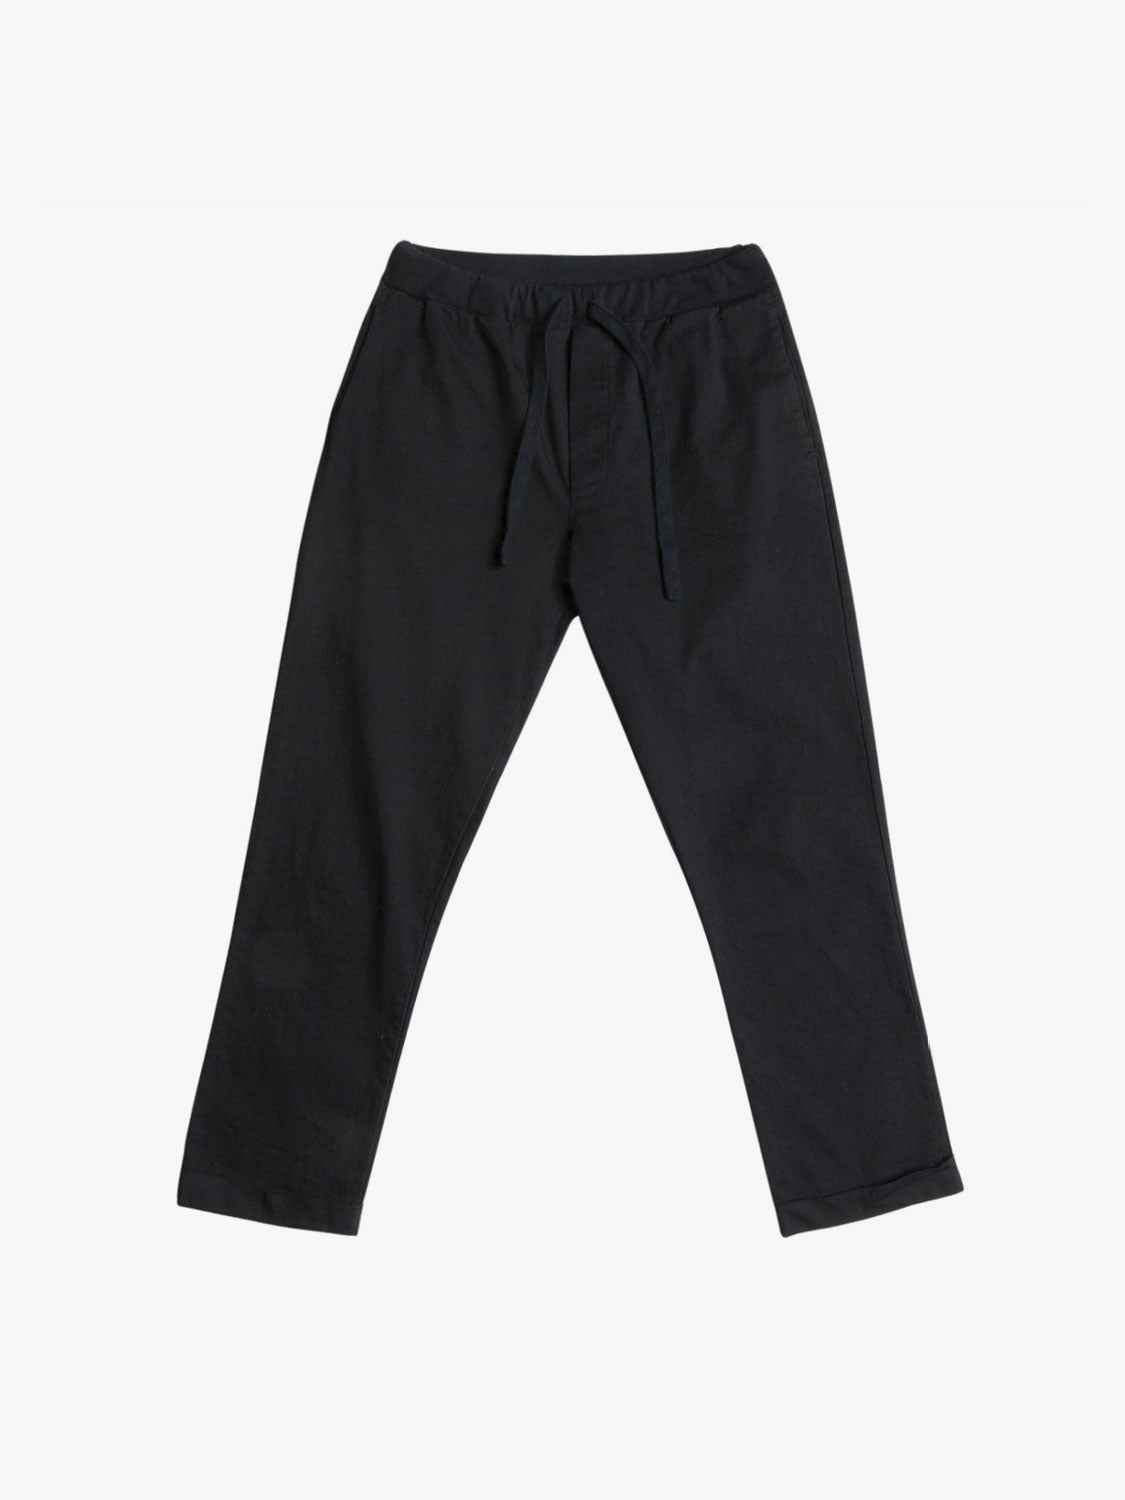 Acne Studios Regular Fit Men's Trousers Cotton Pants Navy Blue Size 52 |  eBay